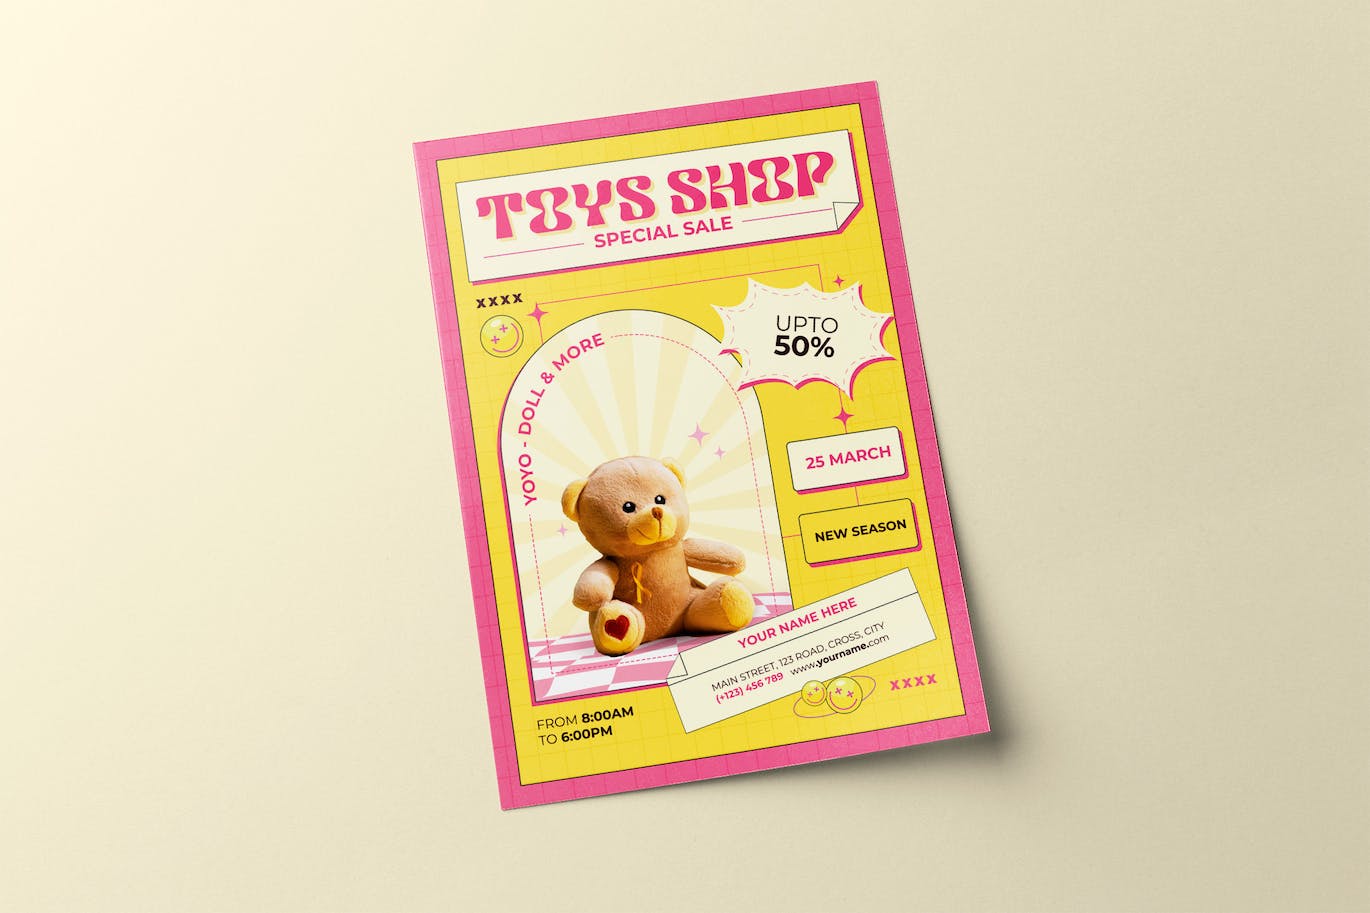 玩具店销售海报设计模板 Toys Shop Sale Flyer 设计素材 第1张